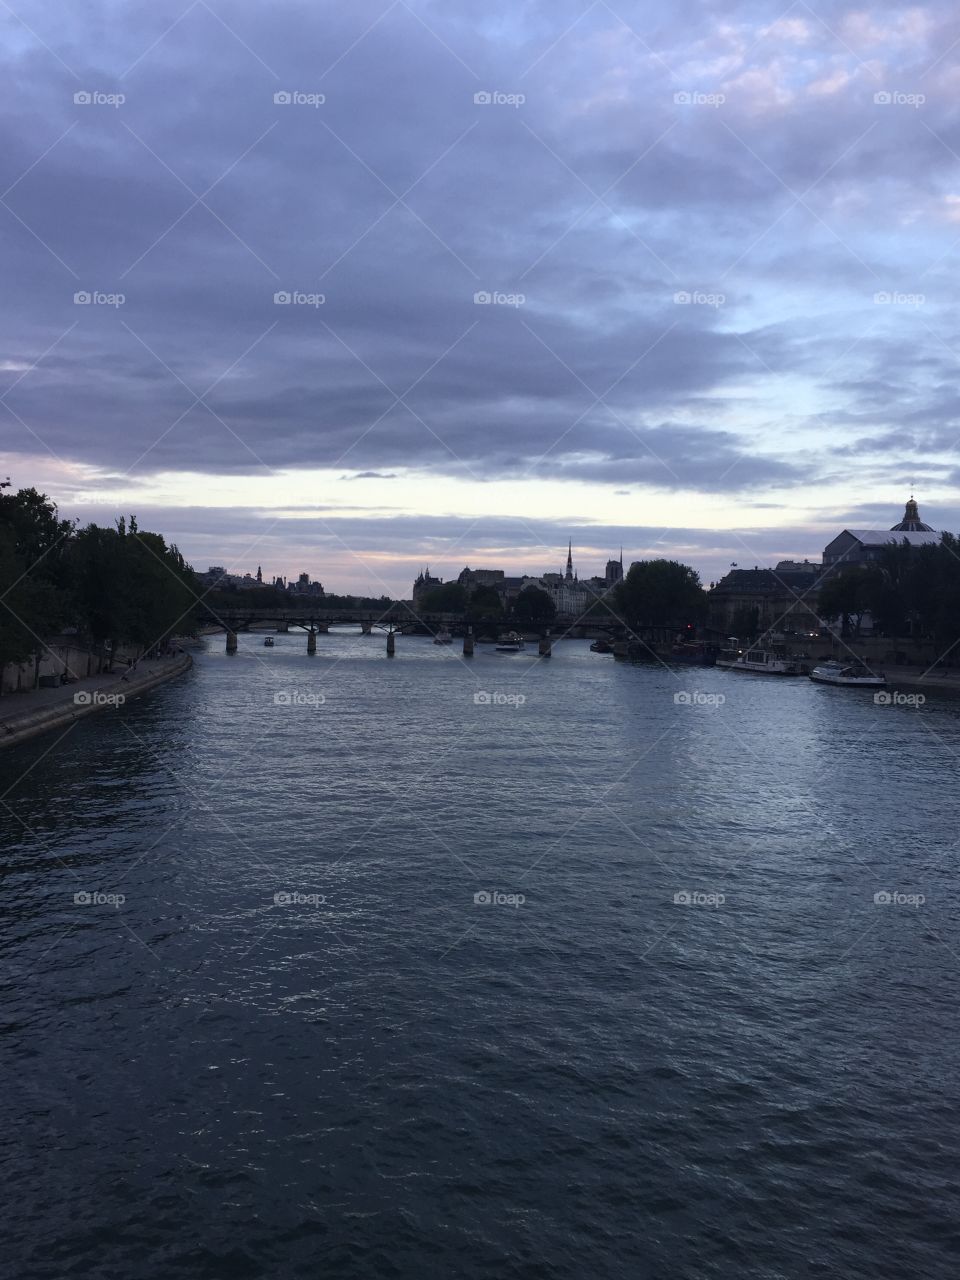 Paris at dusk, overlooking the Seine 